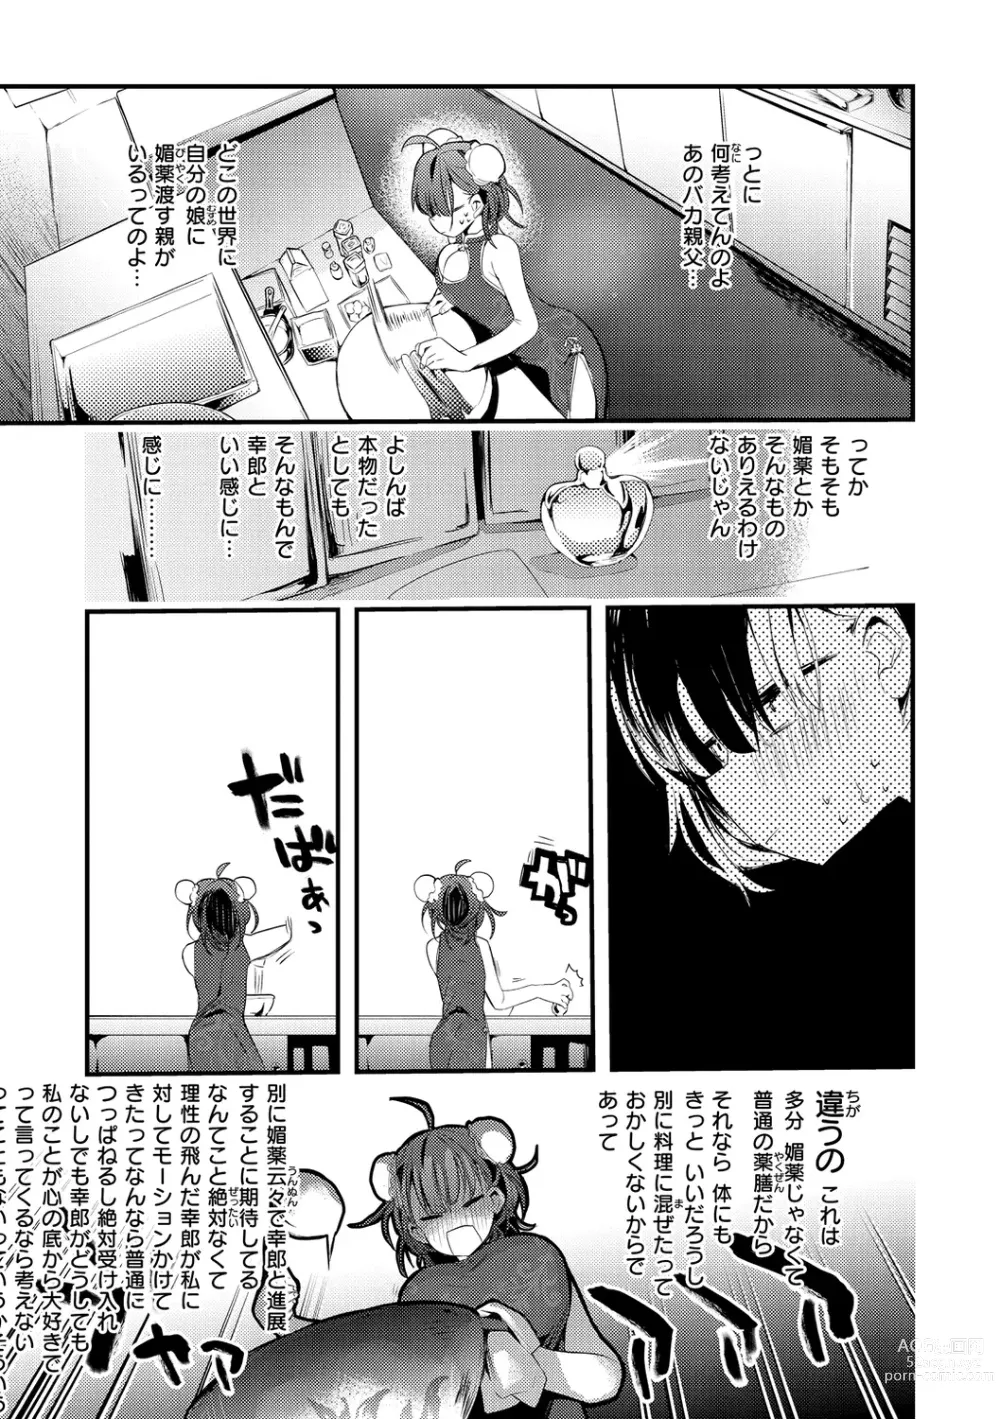 Page 9 of manga New Tawawa Paradise